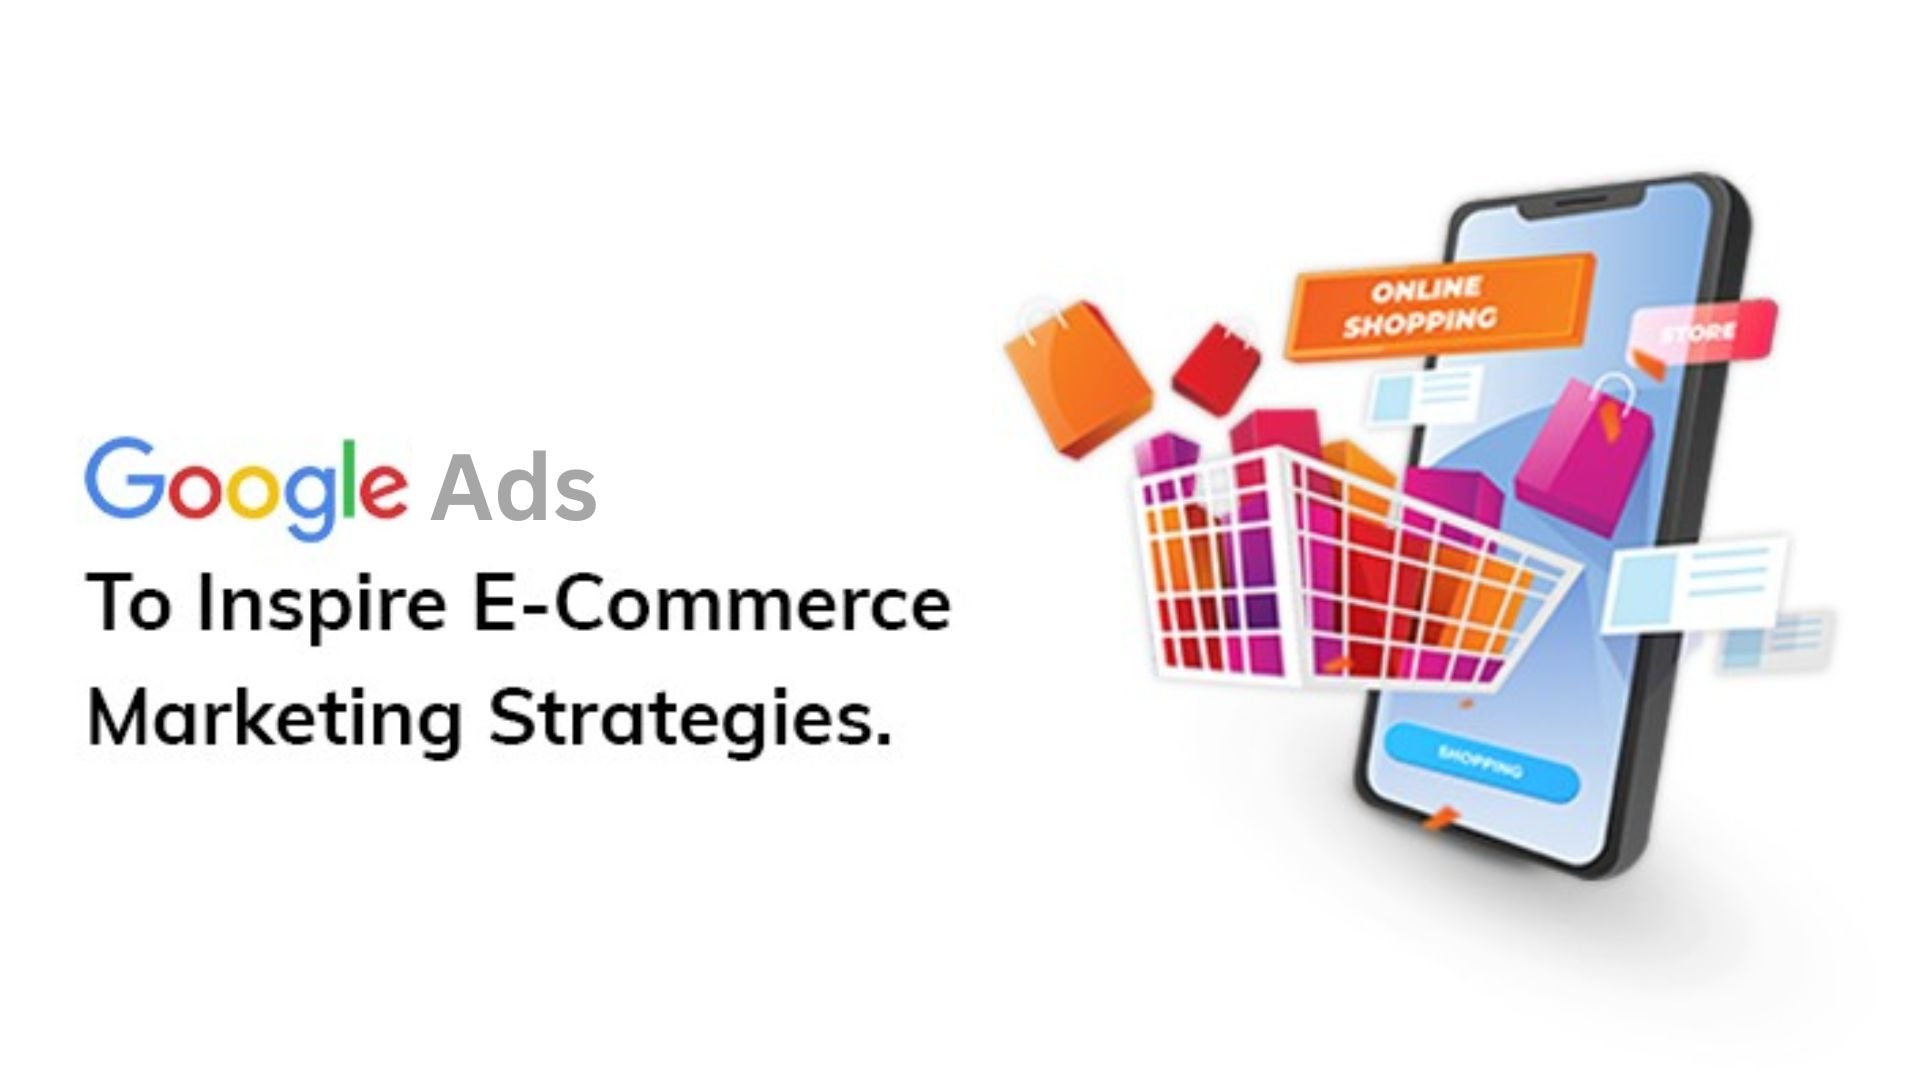 e-commerce marketing strategies for Google